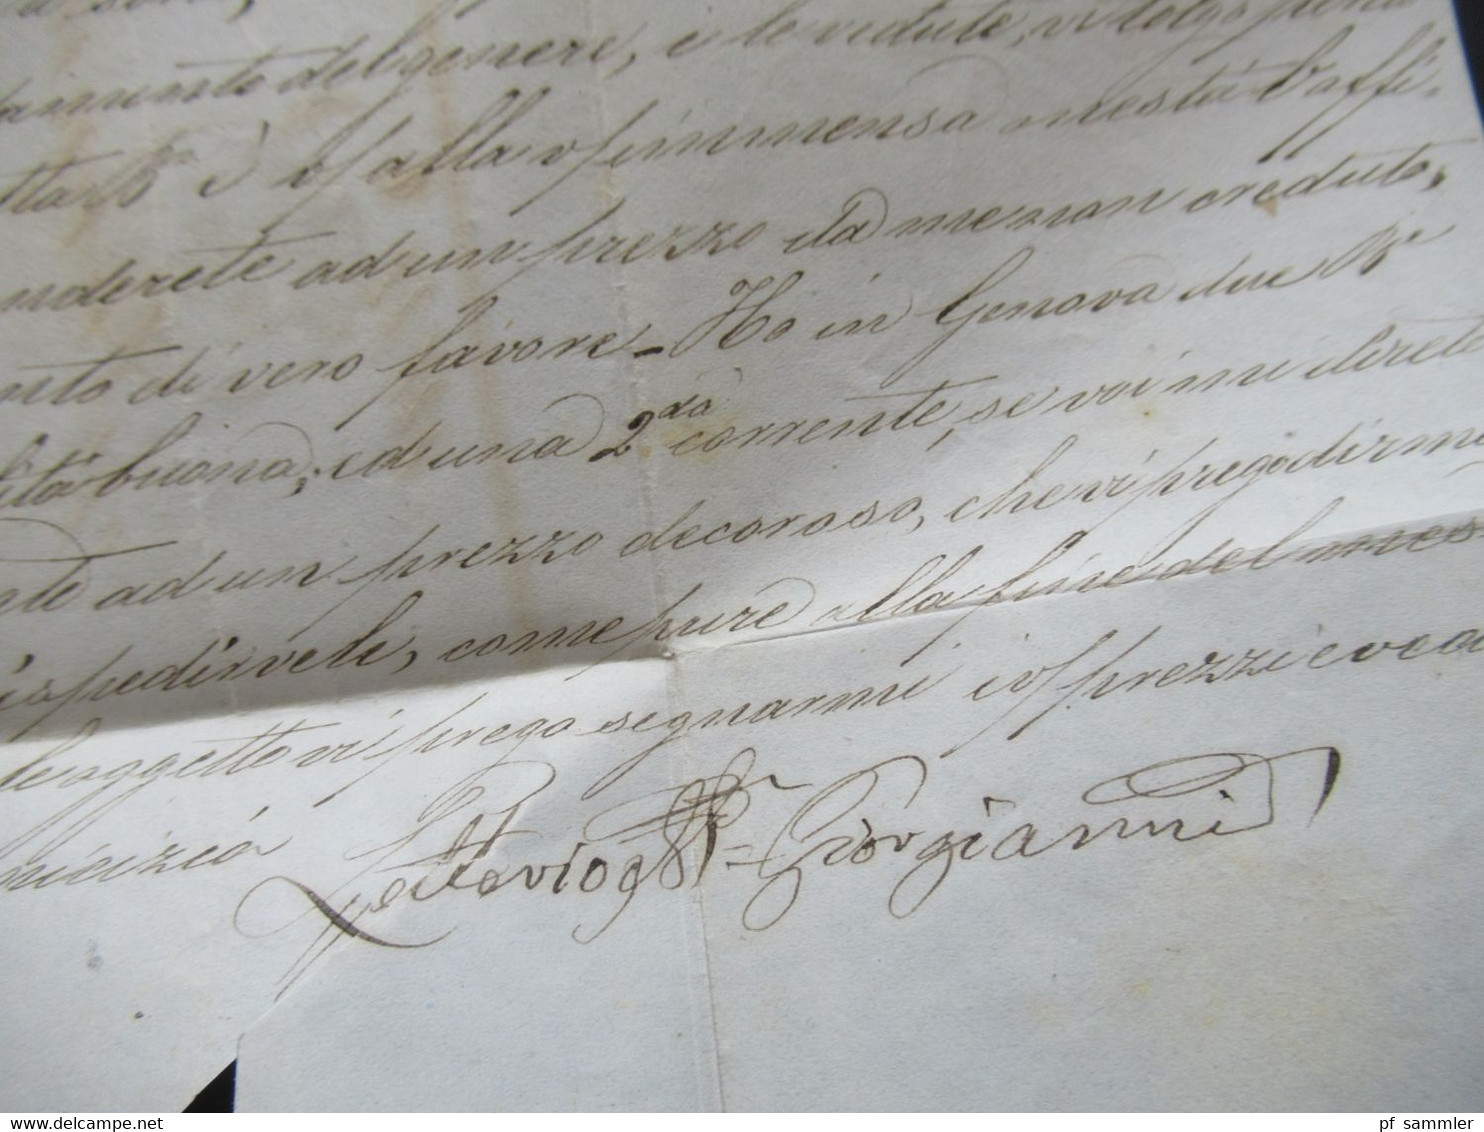 Italien 1856 Faltbrief mit Inhalt/ Auslandsbrief Messina - Lione Schiffspost?! handschriftlicher Vermerk Vapore Francese